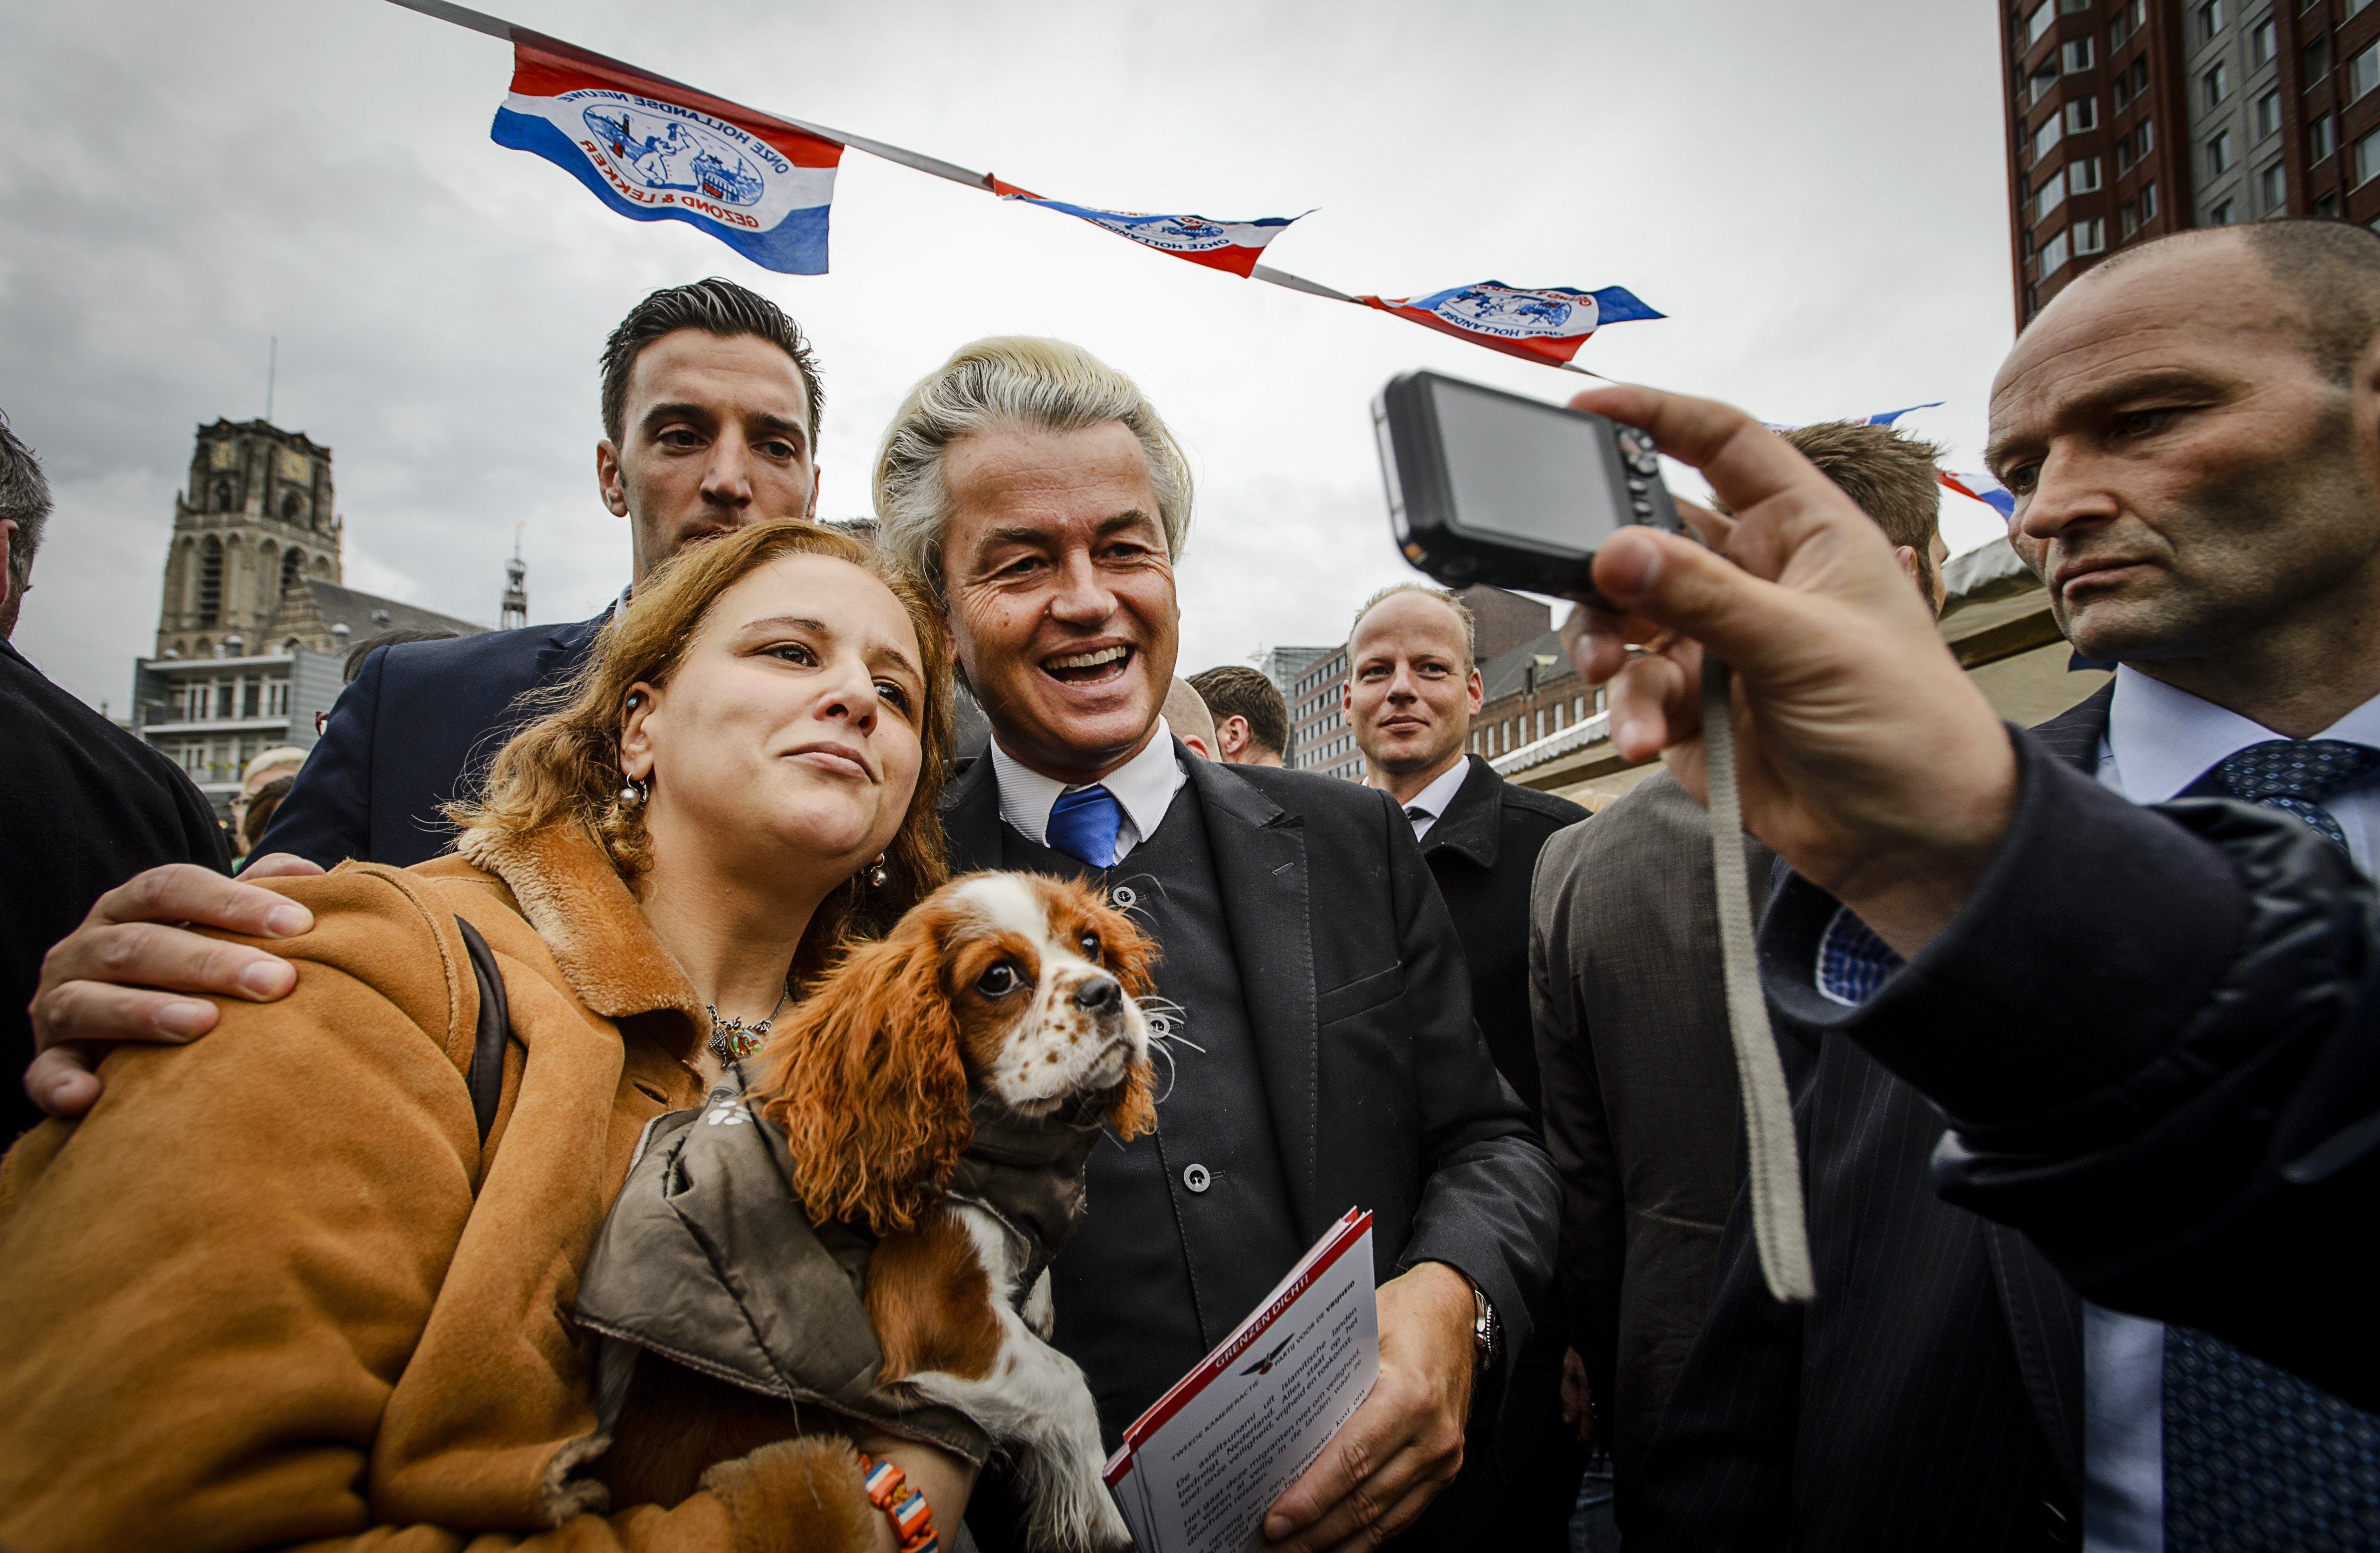 2015-11-07 13:27:04 ROTTERDAM - PVV-leider Geert Wilders deelt flyers uit tegen de komt van een asielzoekerscentrum. ANP REMKO DE WAAL